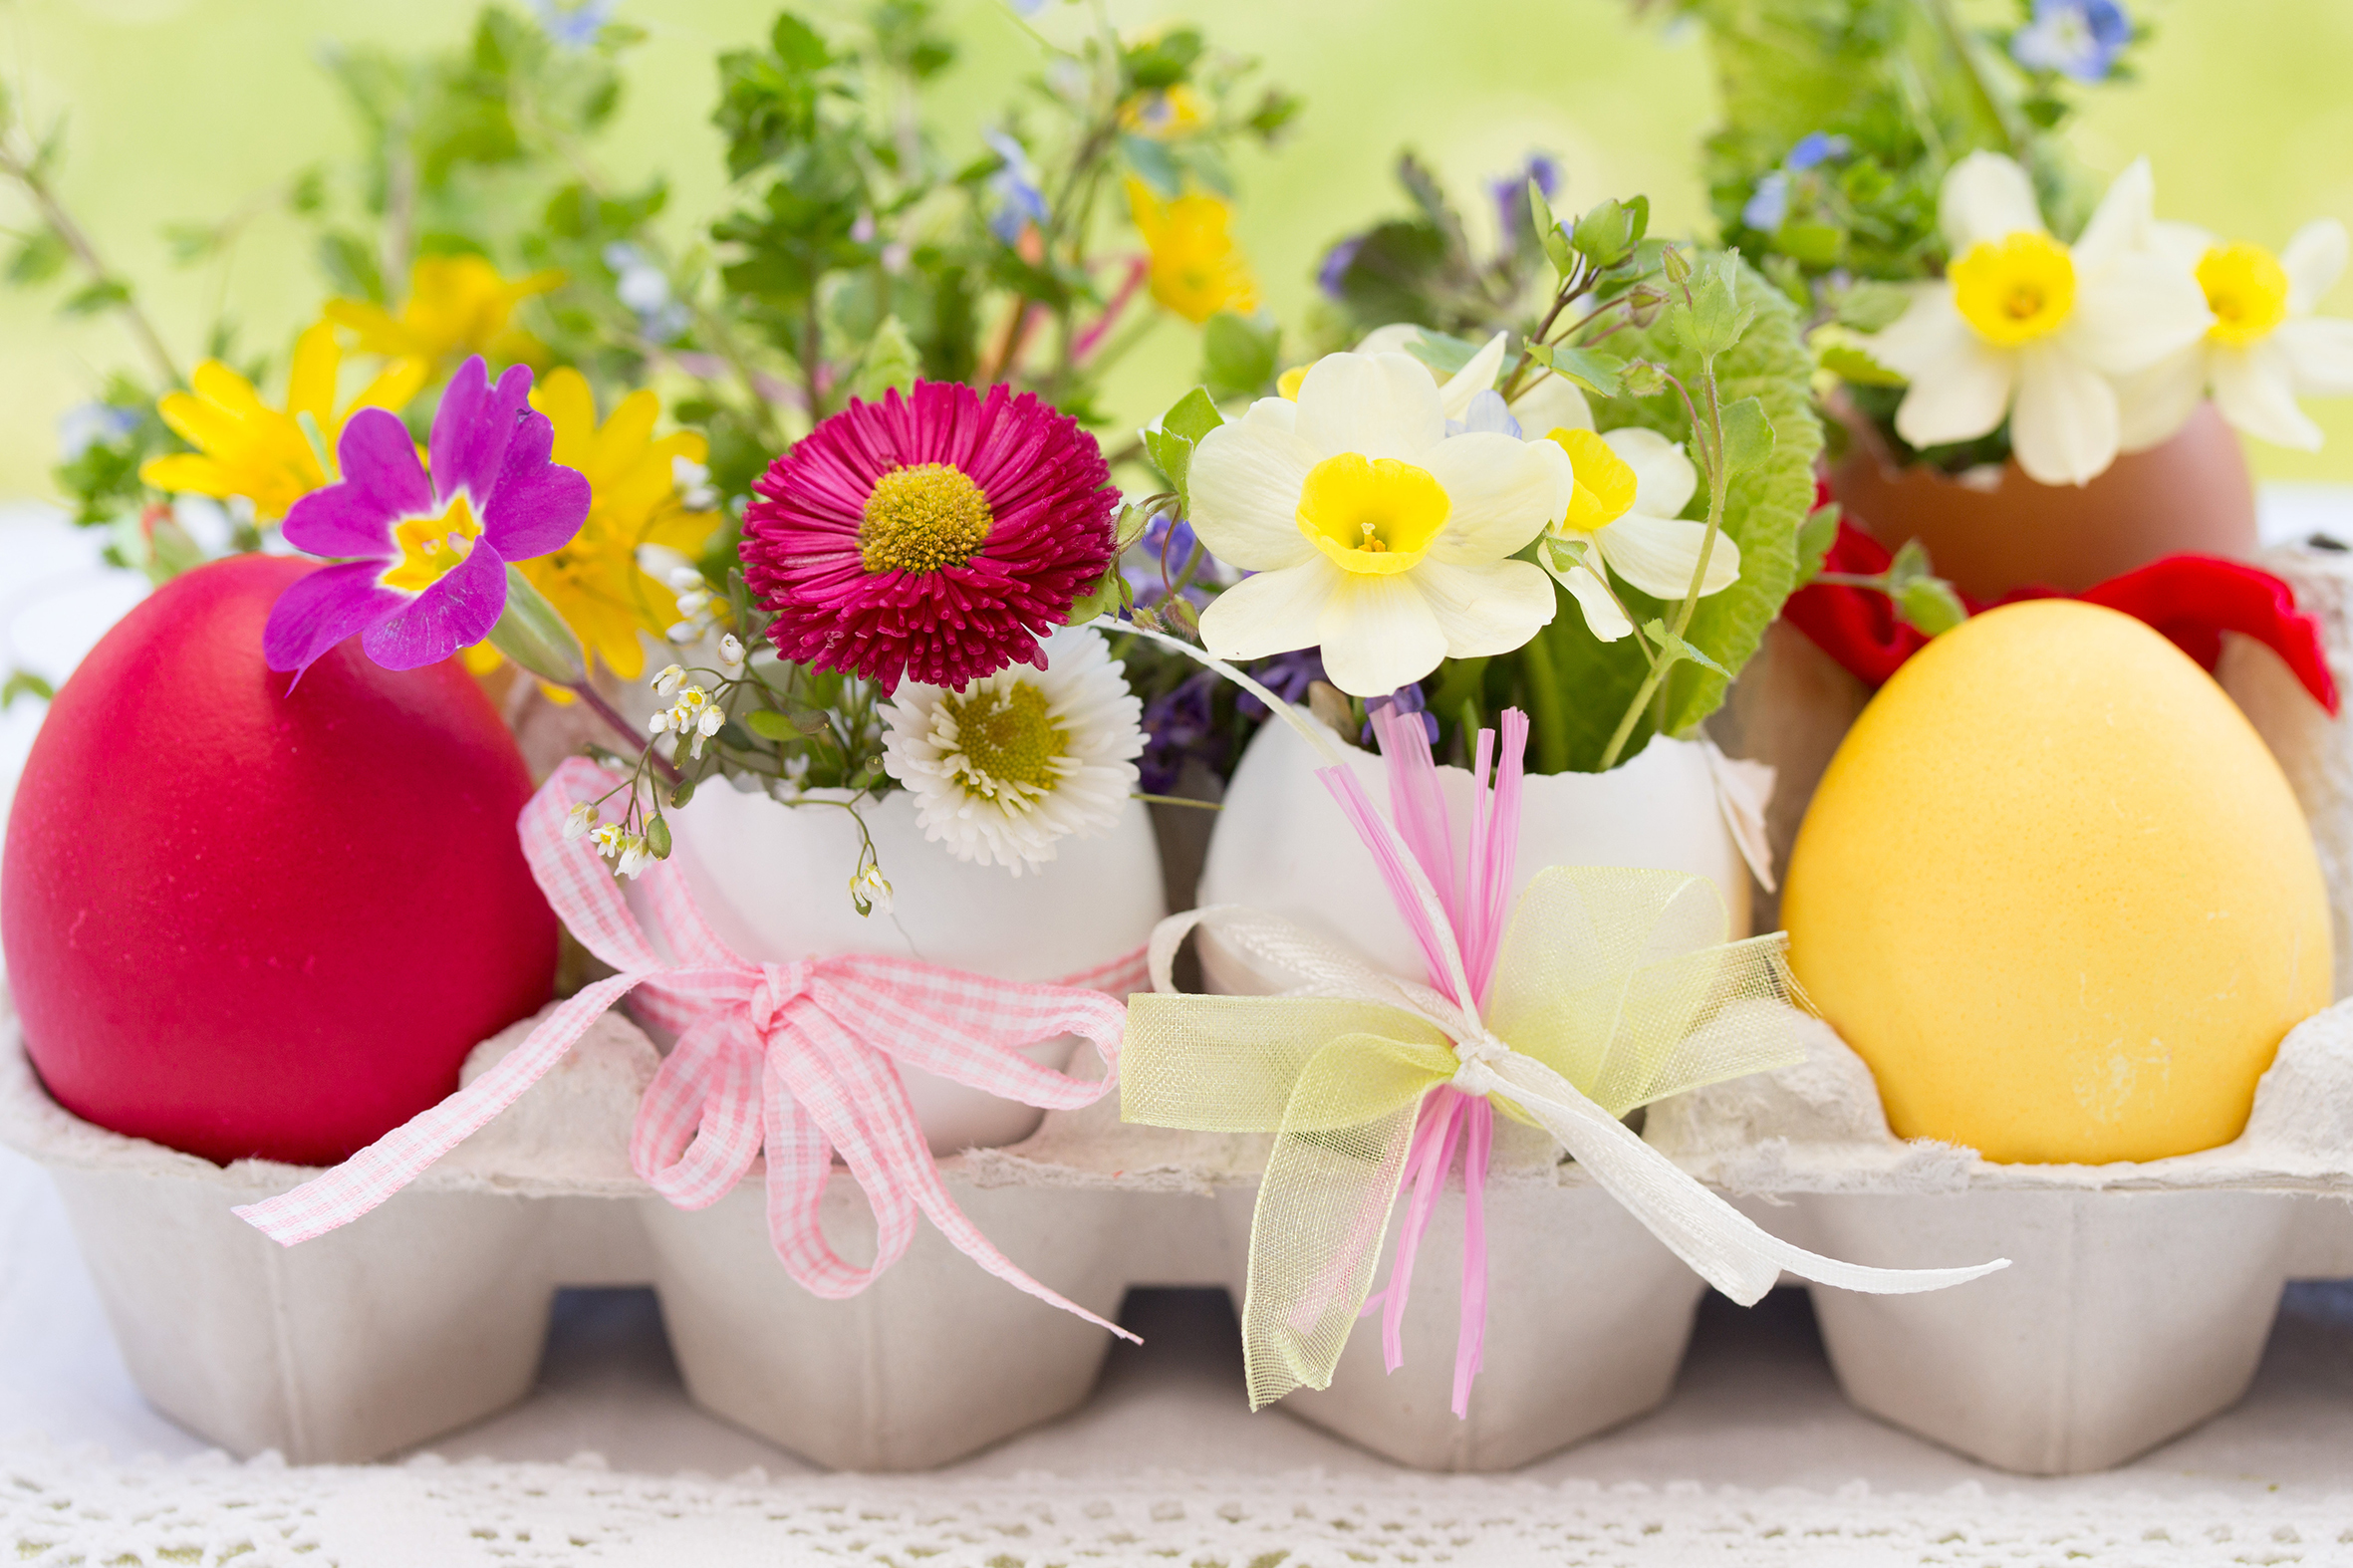 Auch den Eierkarton können Sie nochmal aufbewahren - mit bunten Eiern, die als kleine Blumenvasen dienen, sowie frühlingshaften Gräsern, Schleifchen und Co. gefüllt wird er ein wahrer Hingucker!